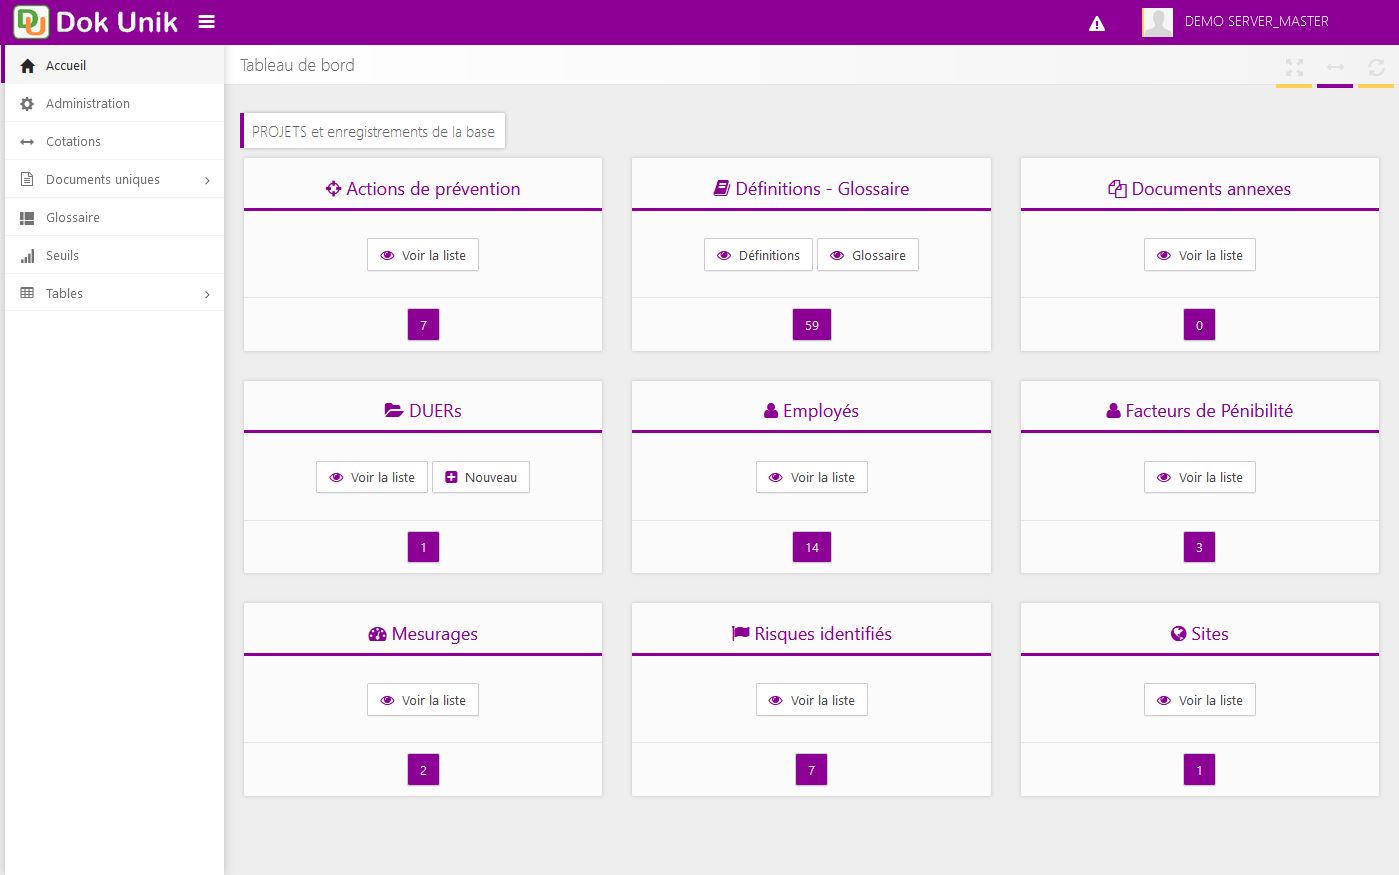 logiciel-document-unique-8-violet